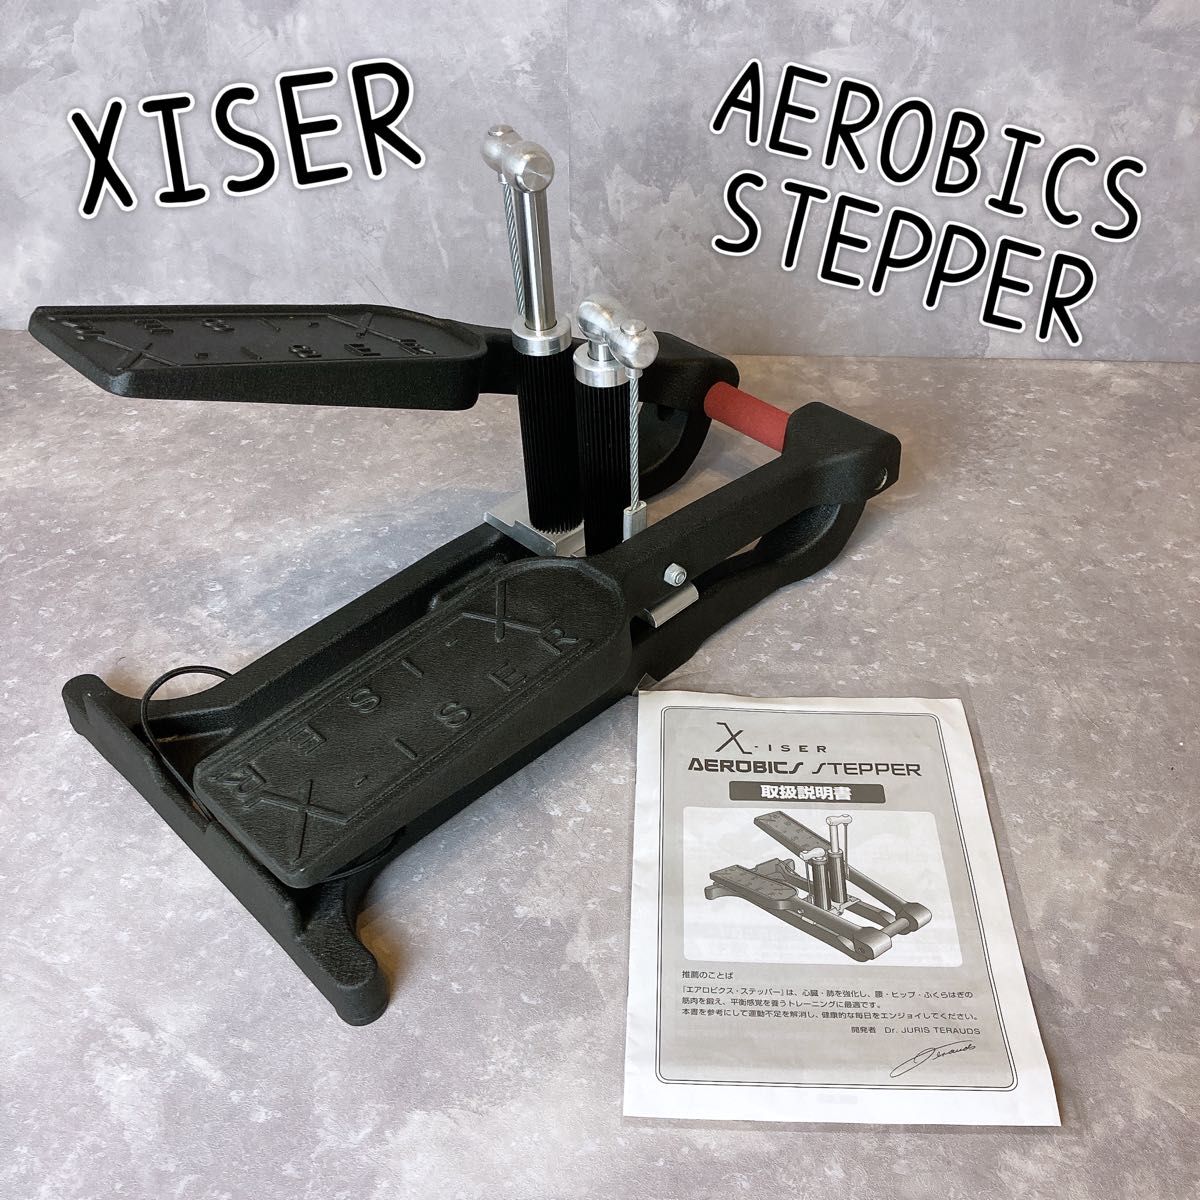 エクサー ステッパー 通販生活 油圧 エアロビクス 健康器具 エクササイズ 足踏み運動 アメリカ製　XISER AEROBICS